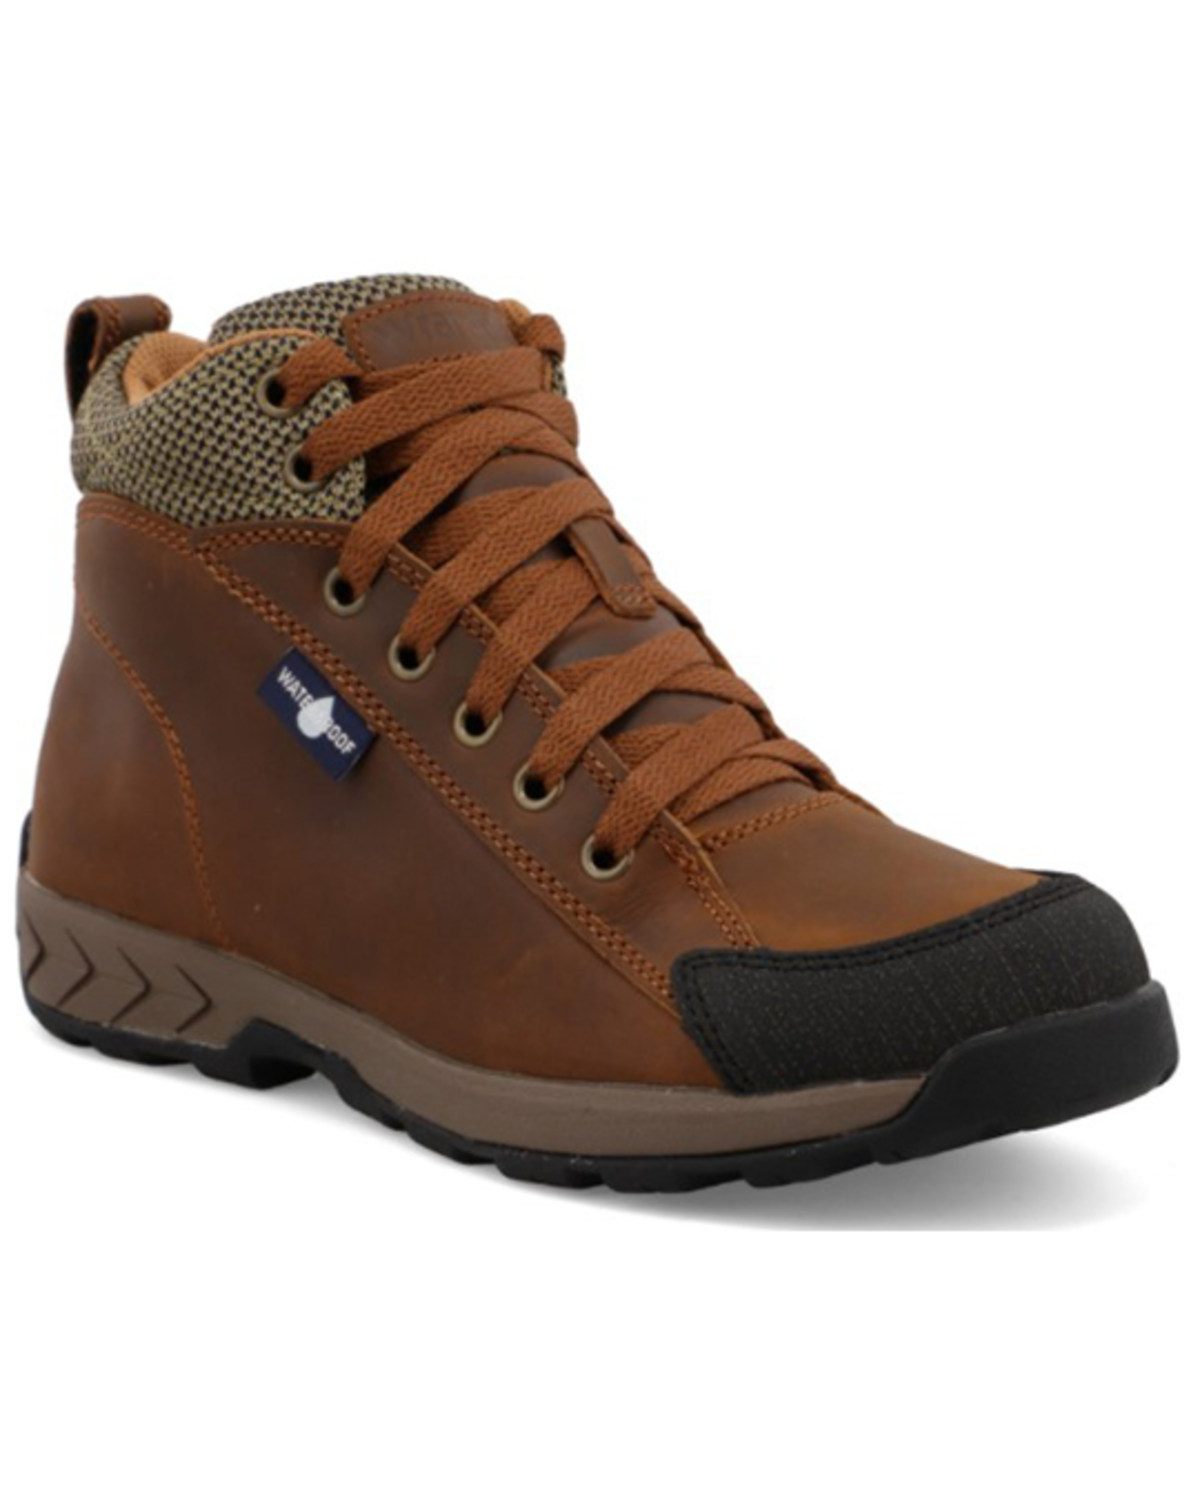 Wrangler Footwear Women's Trail Hiker Boots - Soft Toe